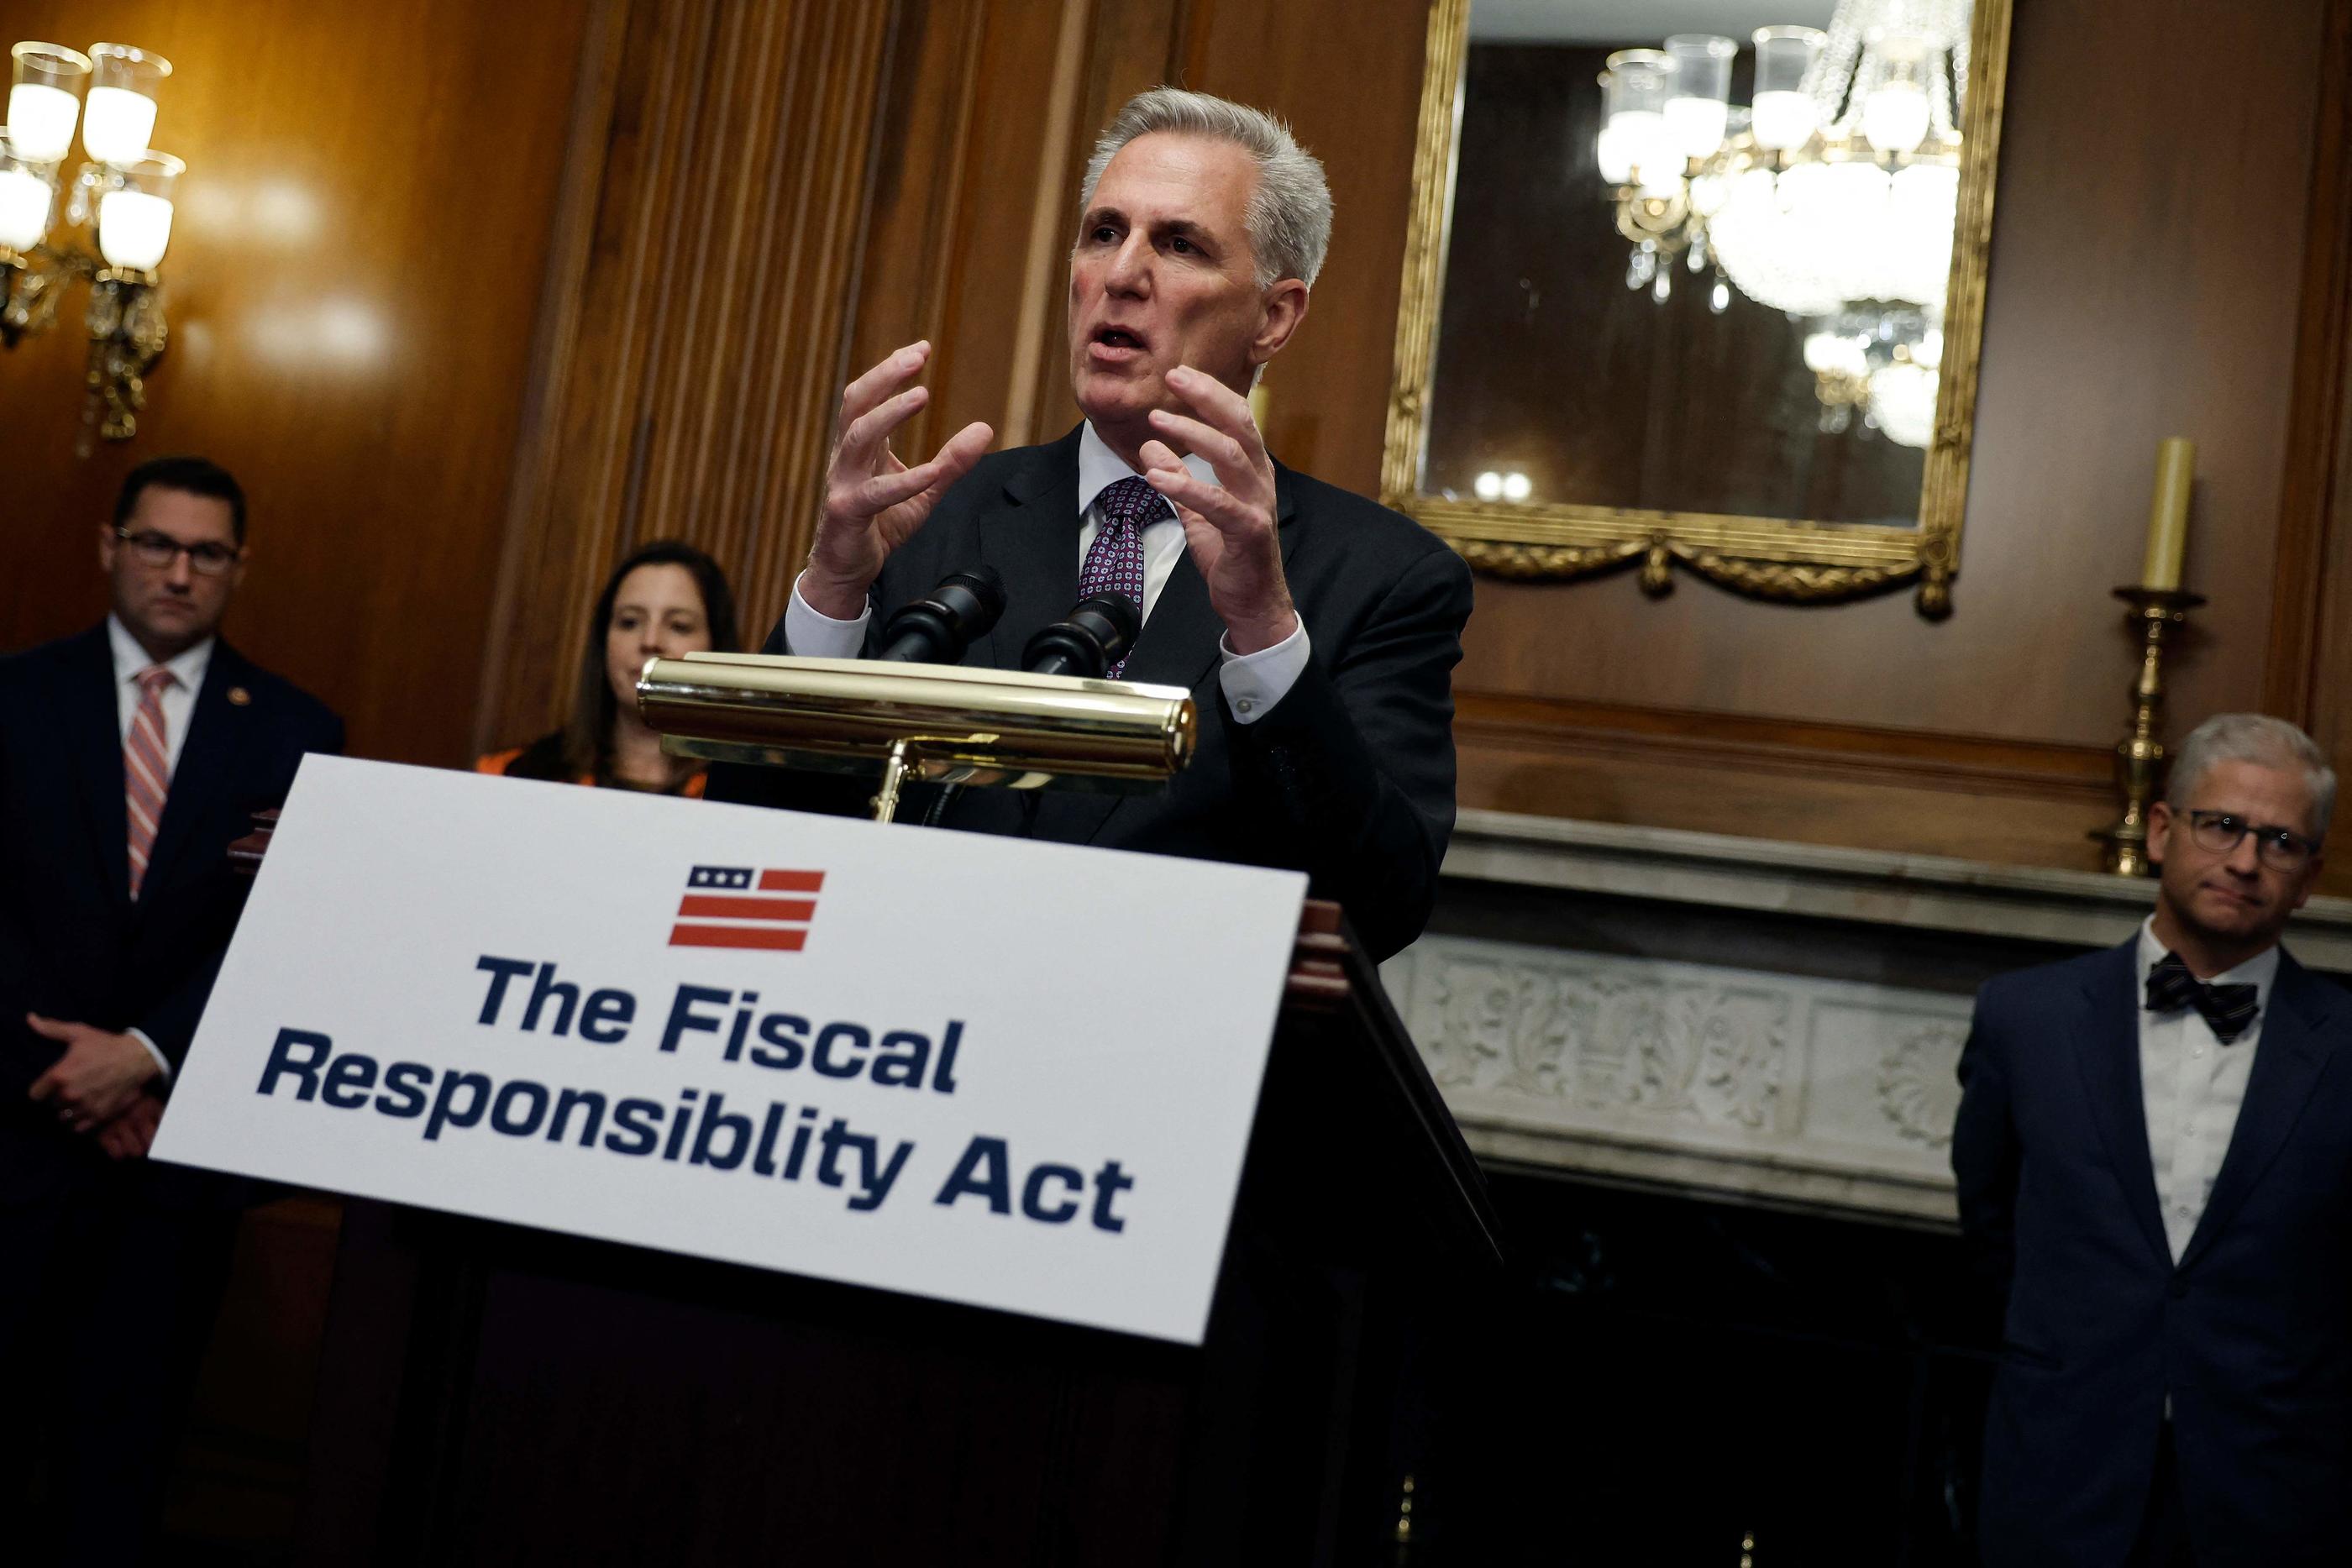 Le chef républicain de la Chambre, Kevin McCarthy, a estimé que ce vote "plaçait le citoyen américain en priorité". AFP/Chip Somodevilla/Getty Images